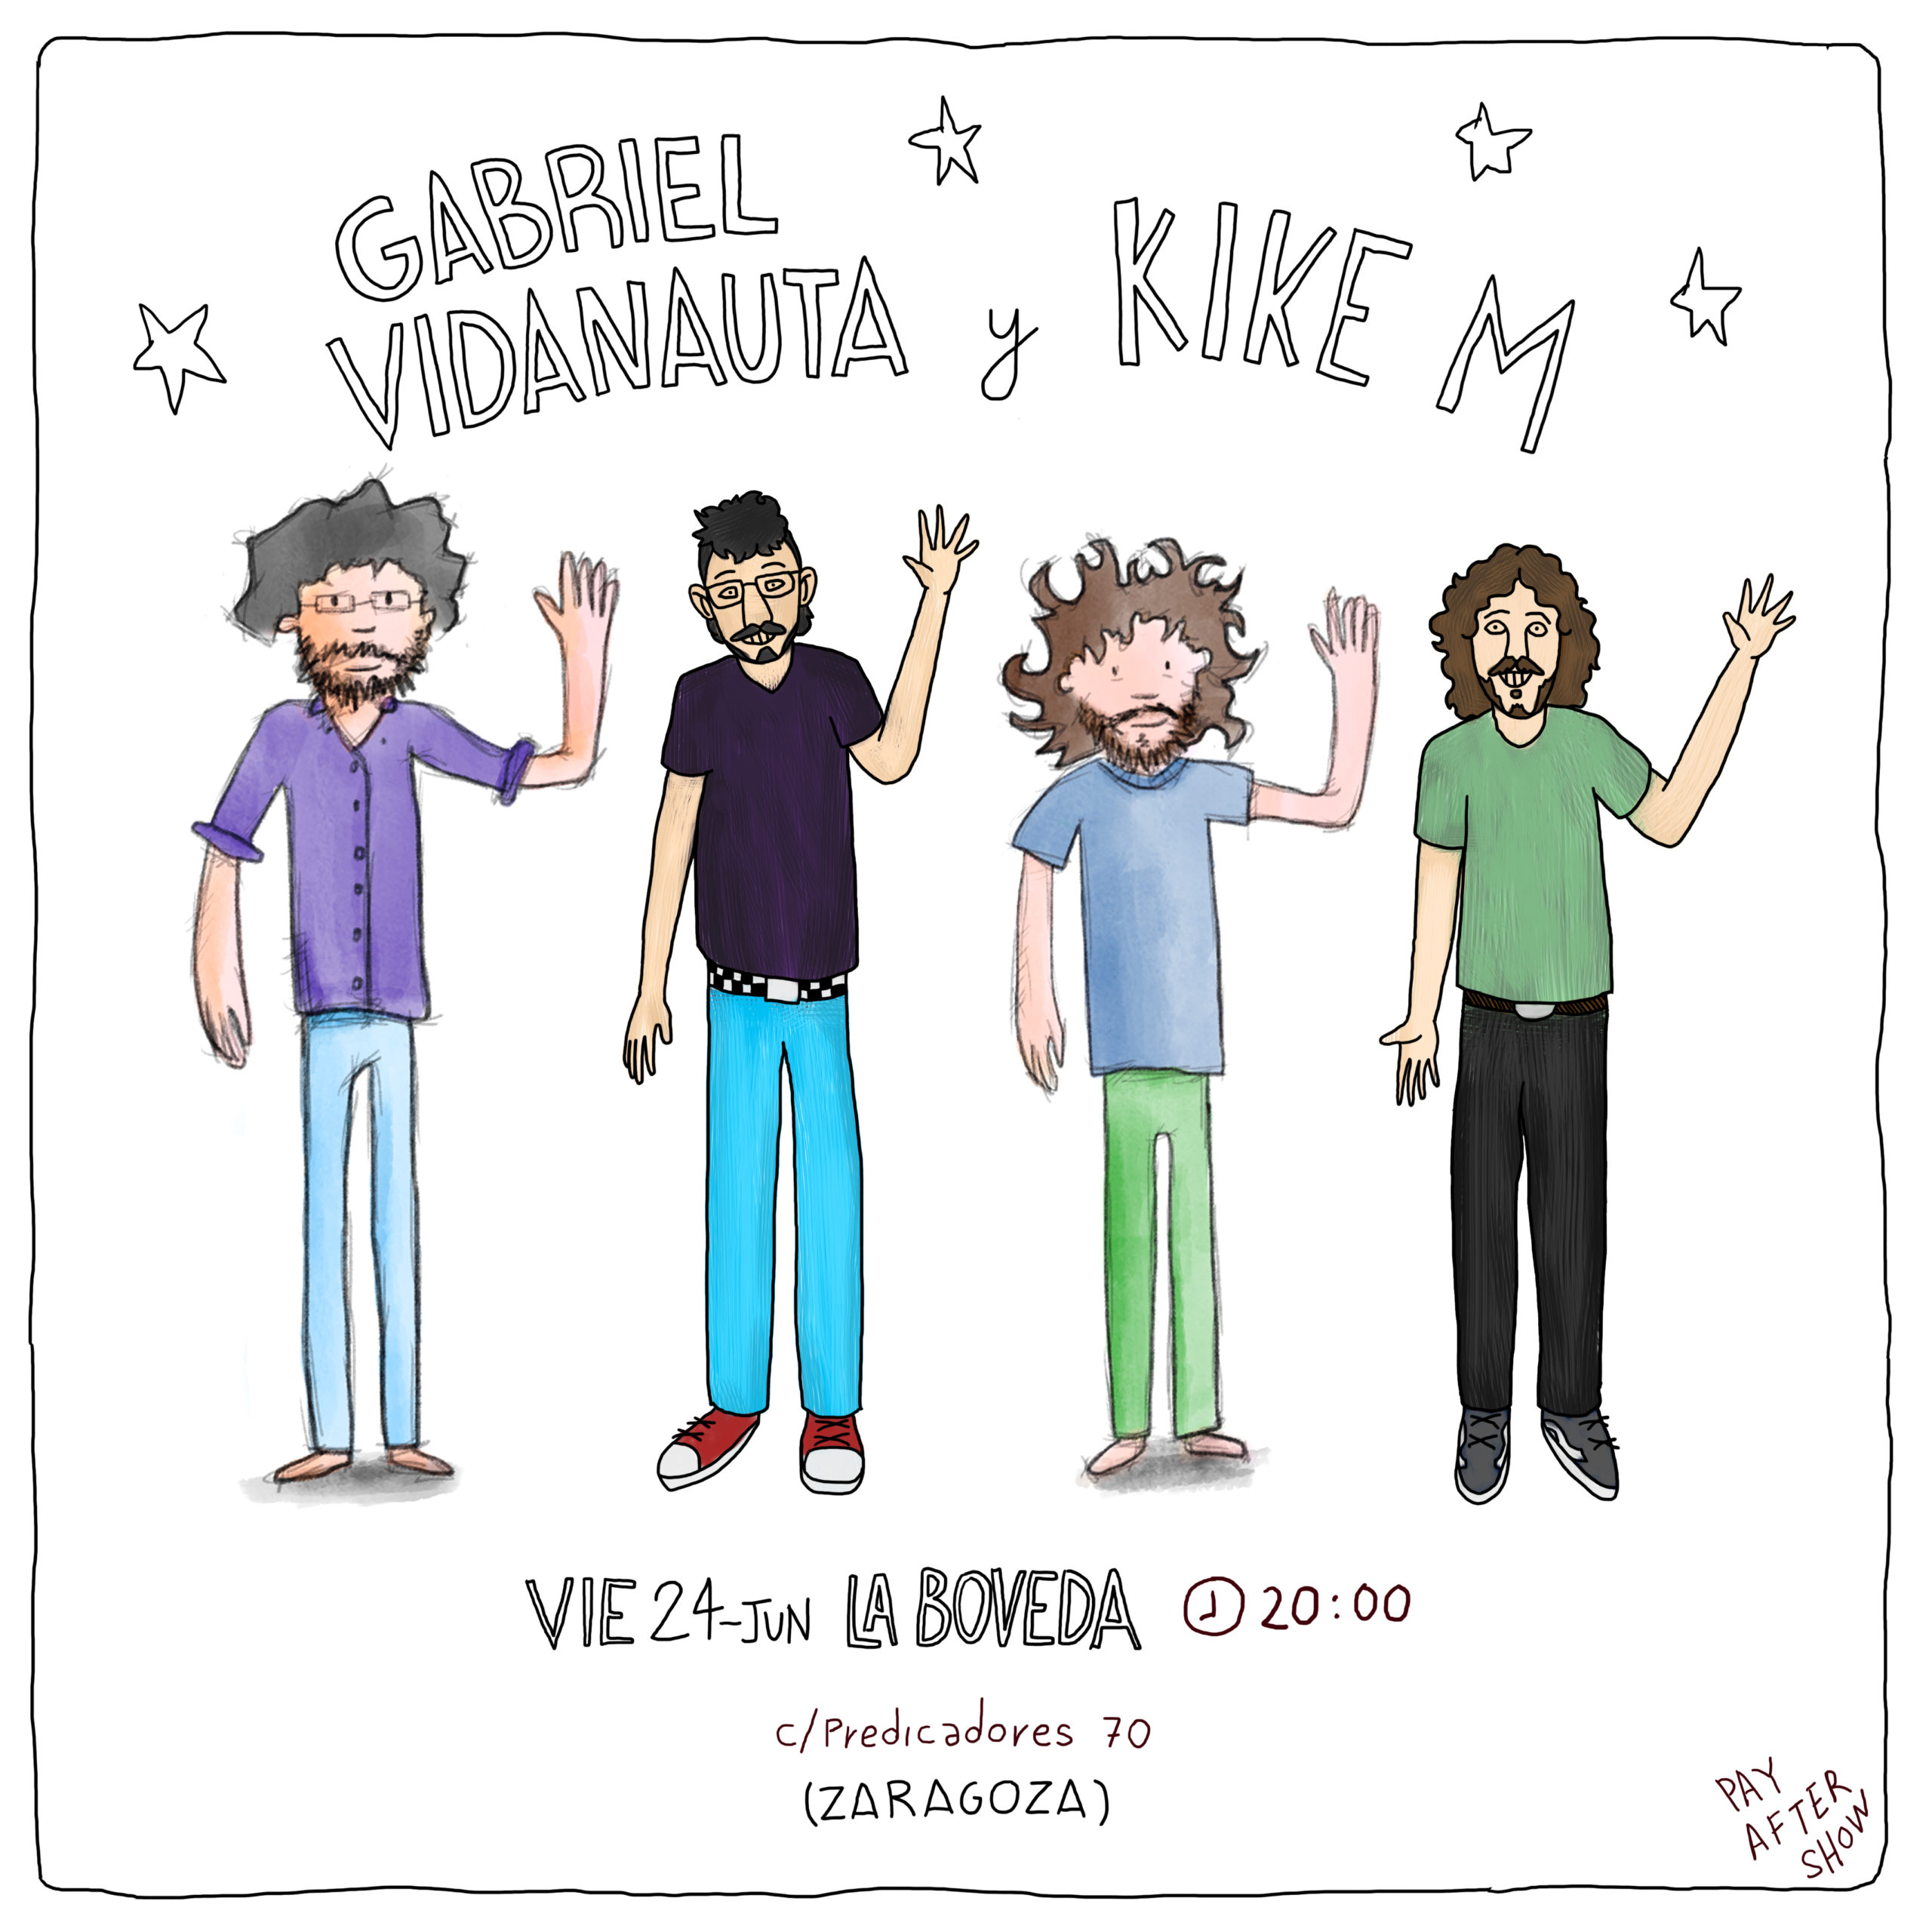 Kike M y Vidanauta en Zaragoza concierto